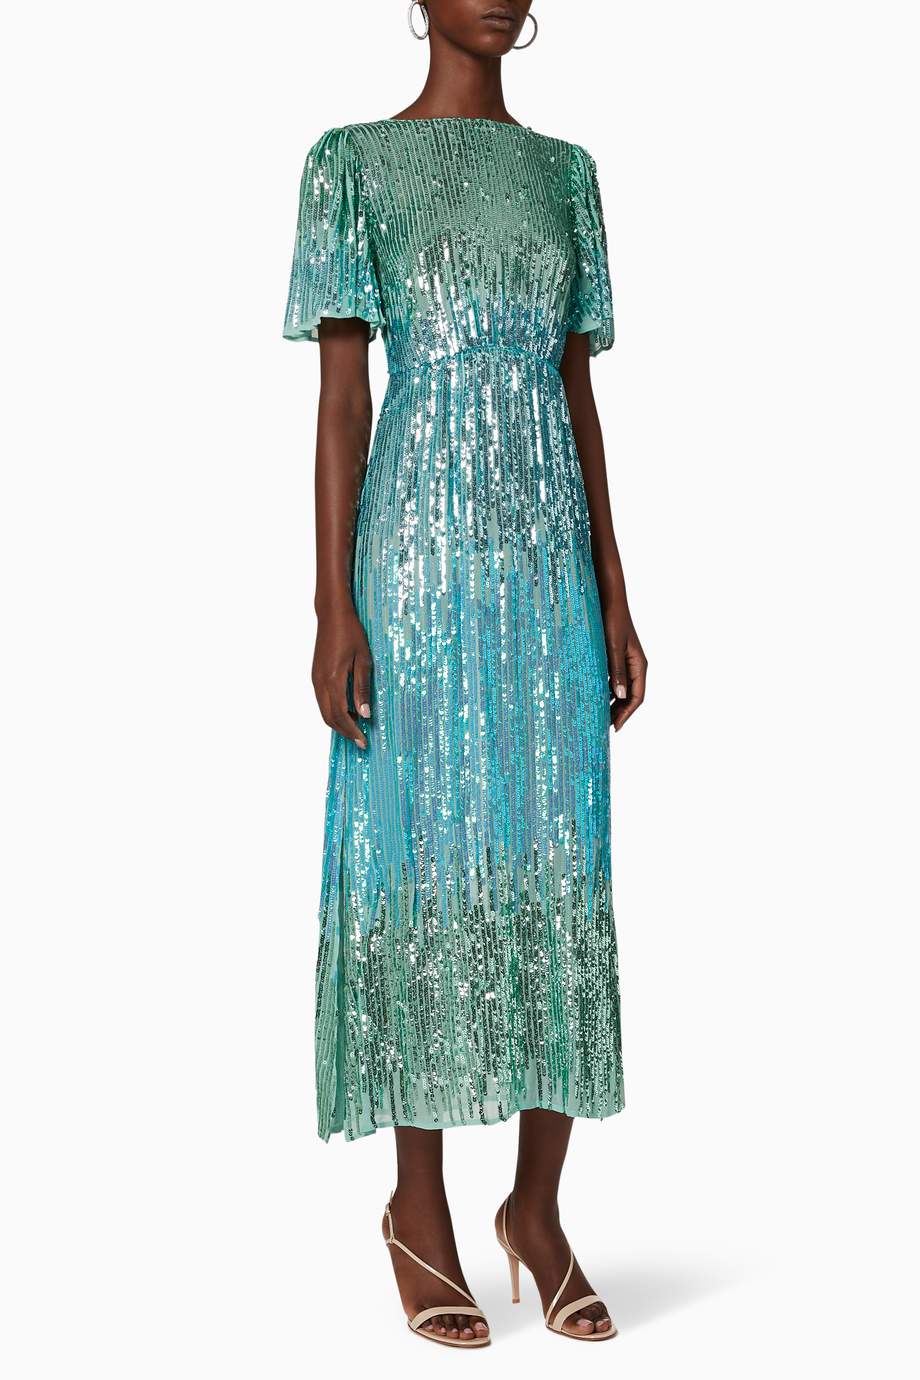 Shop RIXO Green Venus Dip Dye Sequin Dress for Women | Ounass Oman